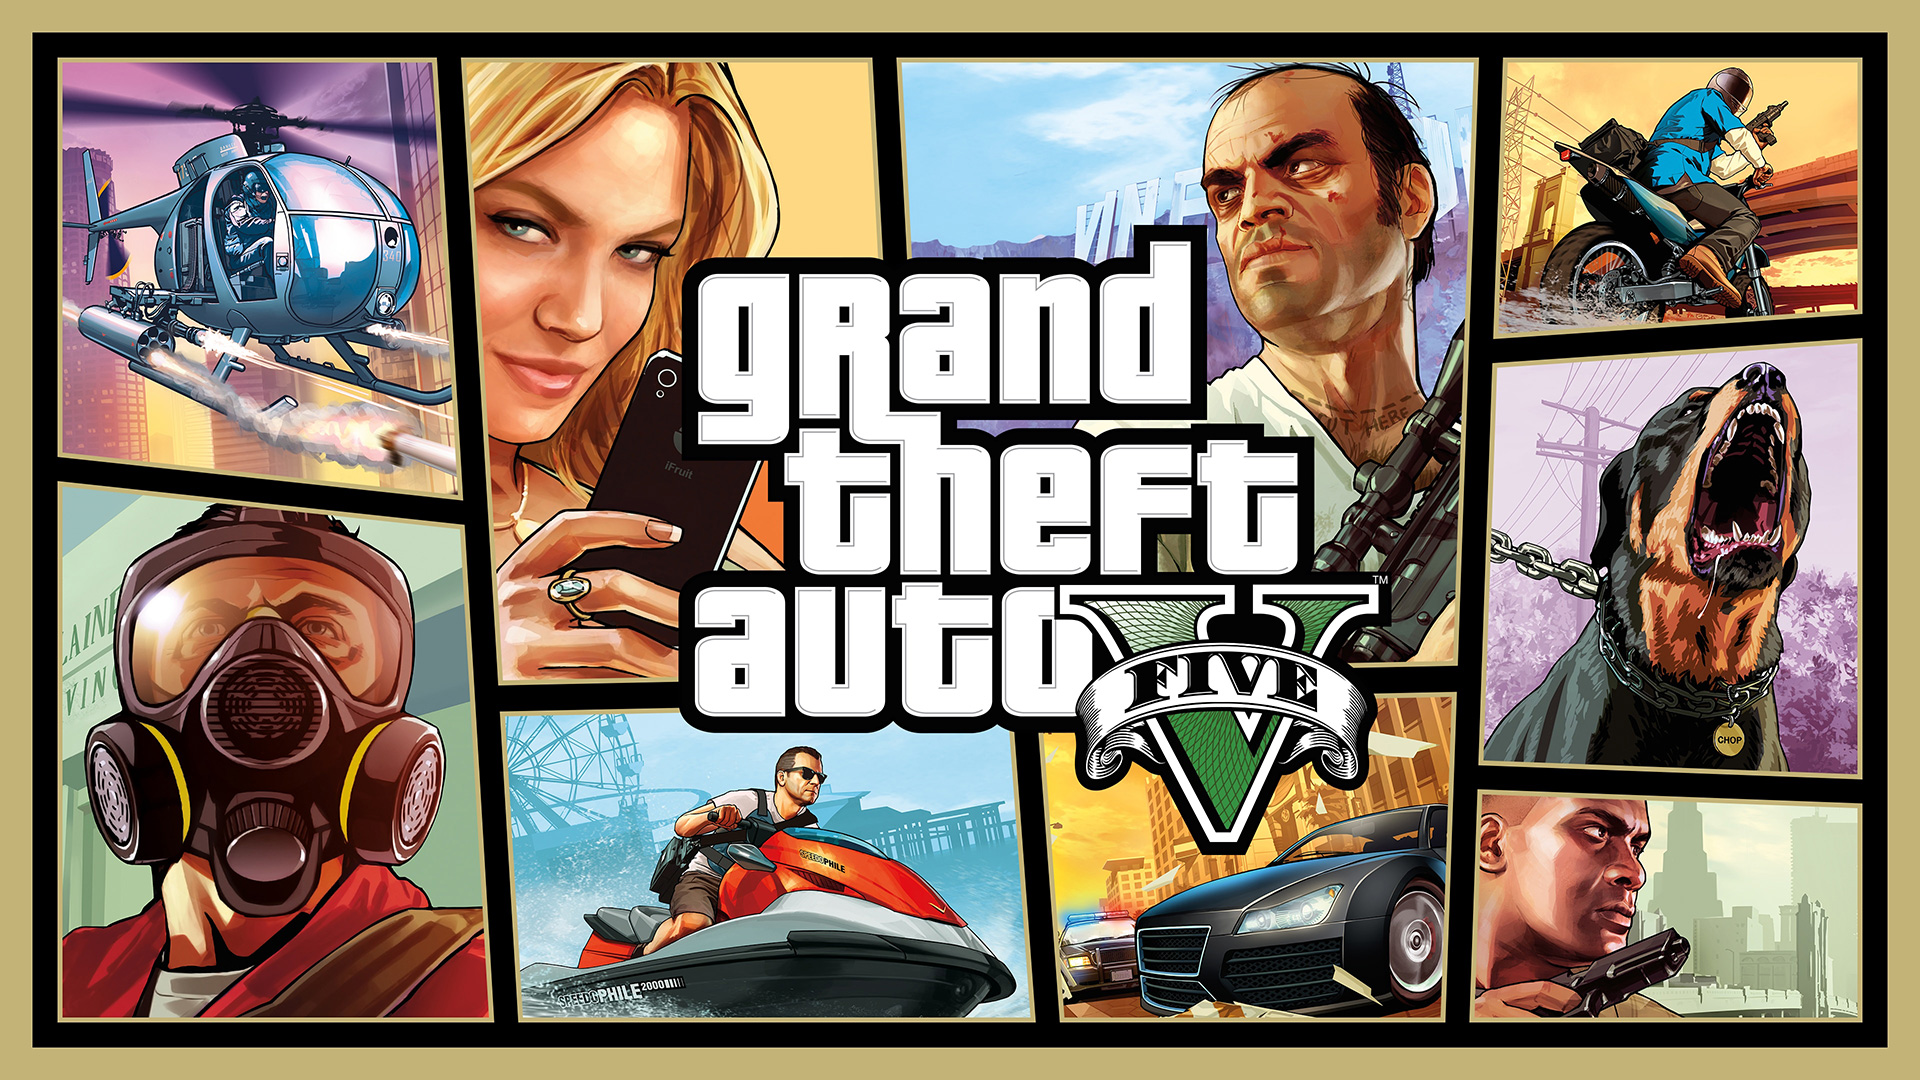 Crazy Joystick - Grand Theft Auto V